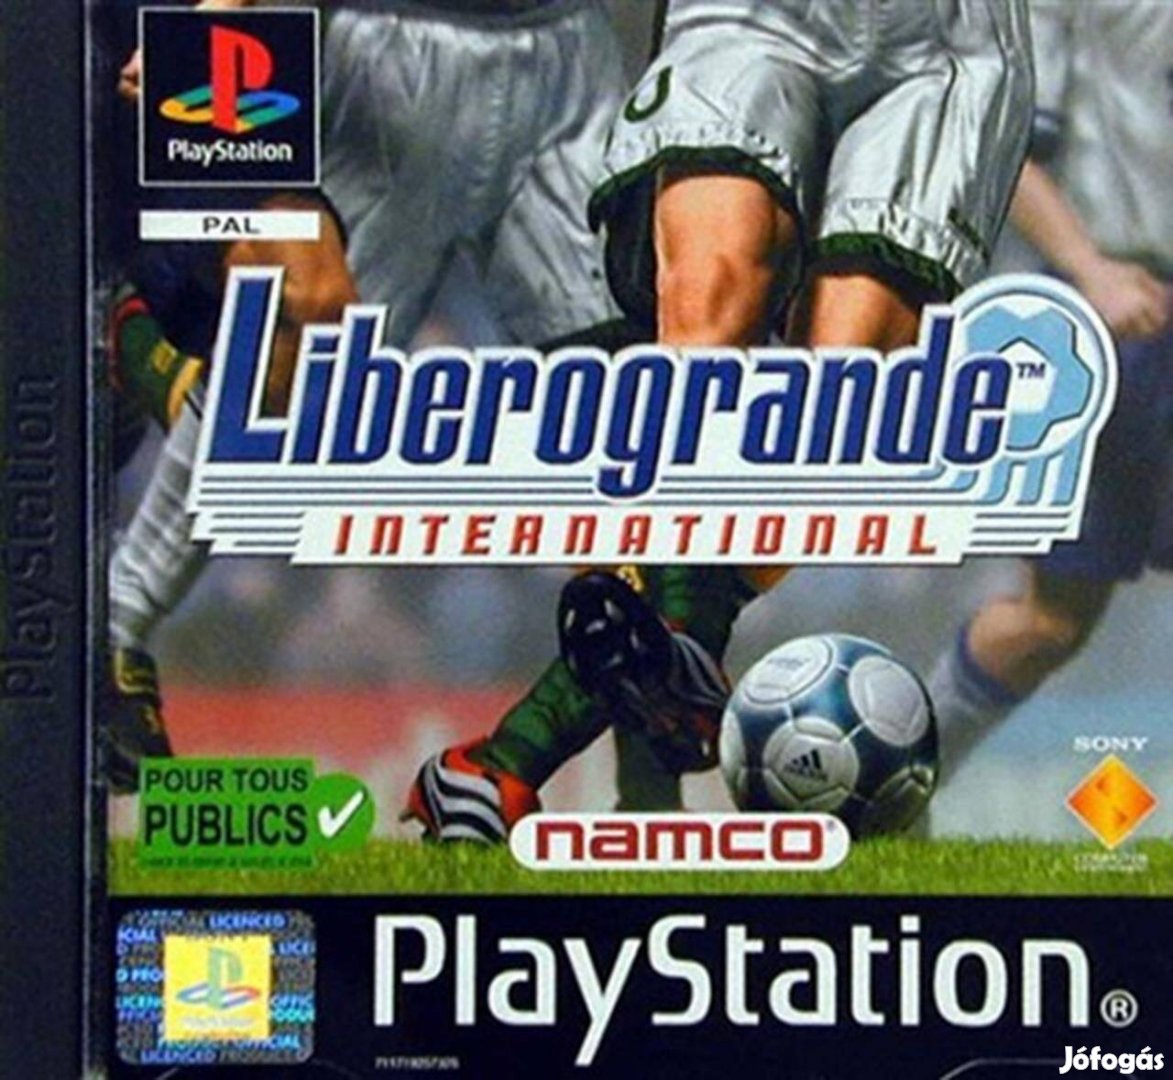 Liberogrande International, Mint Playstation 1 játék